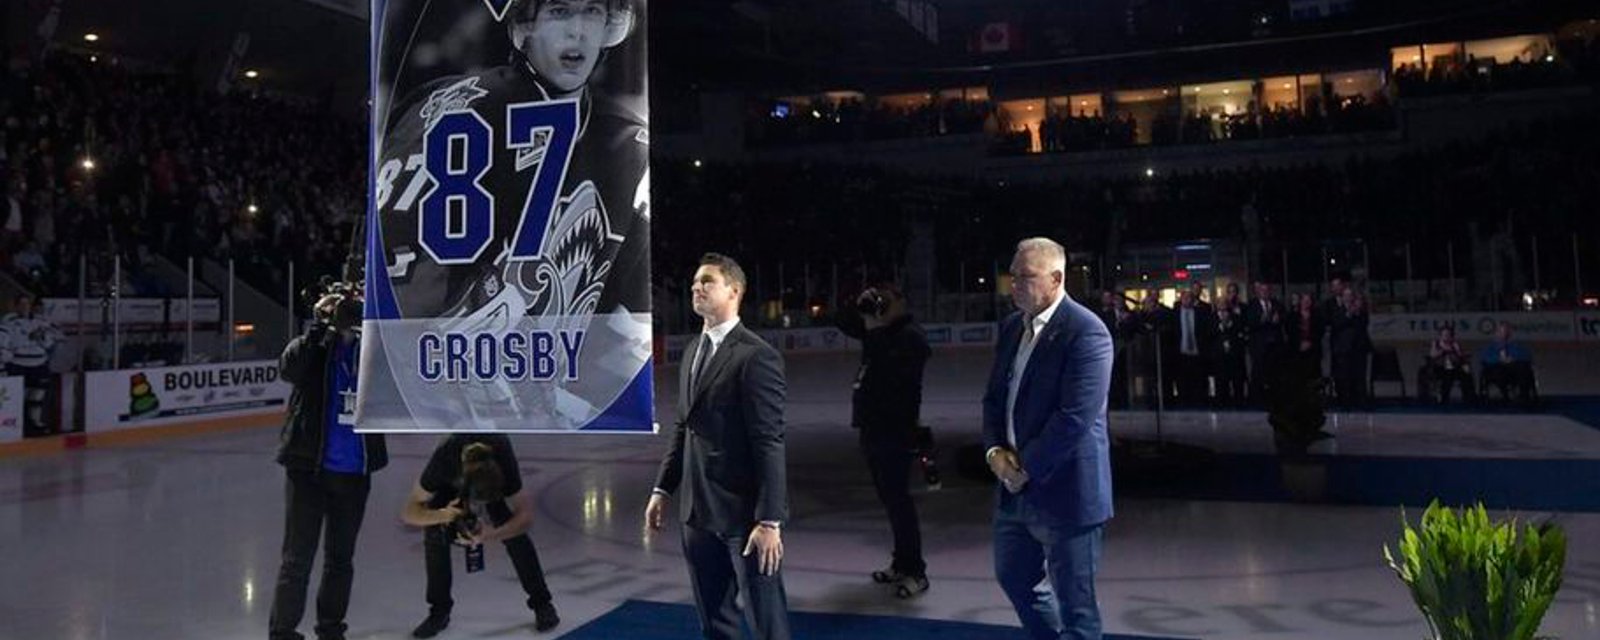 Une pétition circule pour que Sidney Crosby ait une rue à son nom à Rimouski